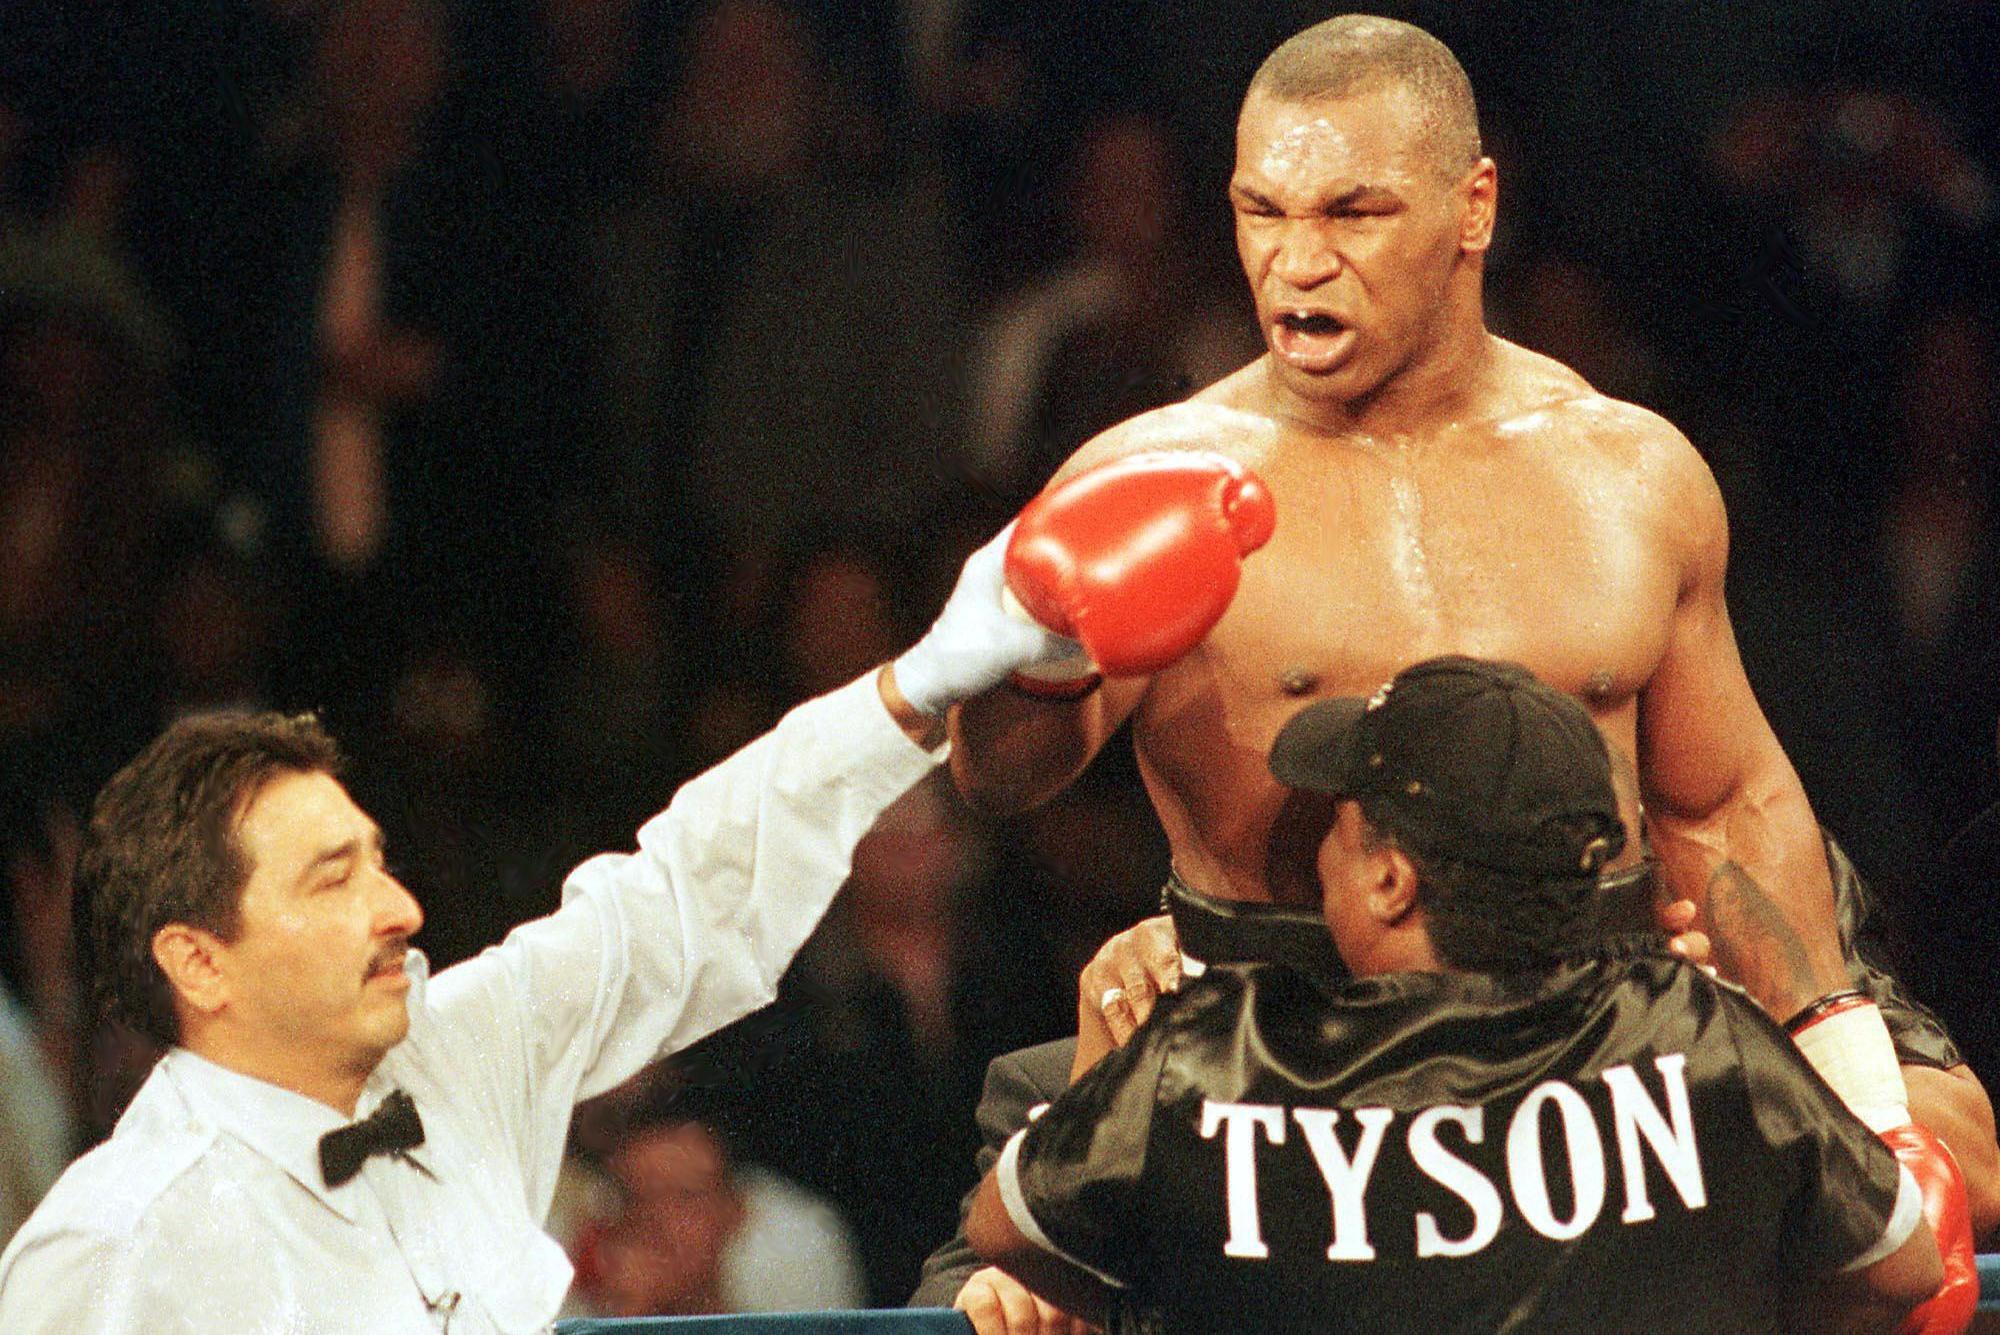 Mike Tyson khiến dân tình choáng nặng khi trình diễn tốc độ và sức mạnh kinh hoàng ở tuổi 53, đến cả The Rock cũng phải đứng ngồi không yên - Ảnh 3.